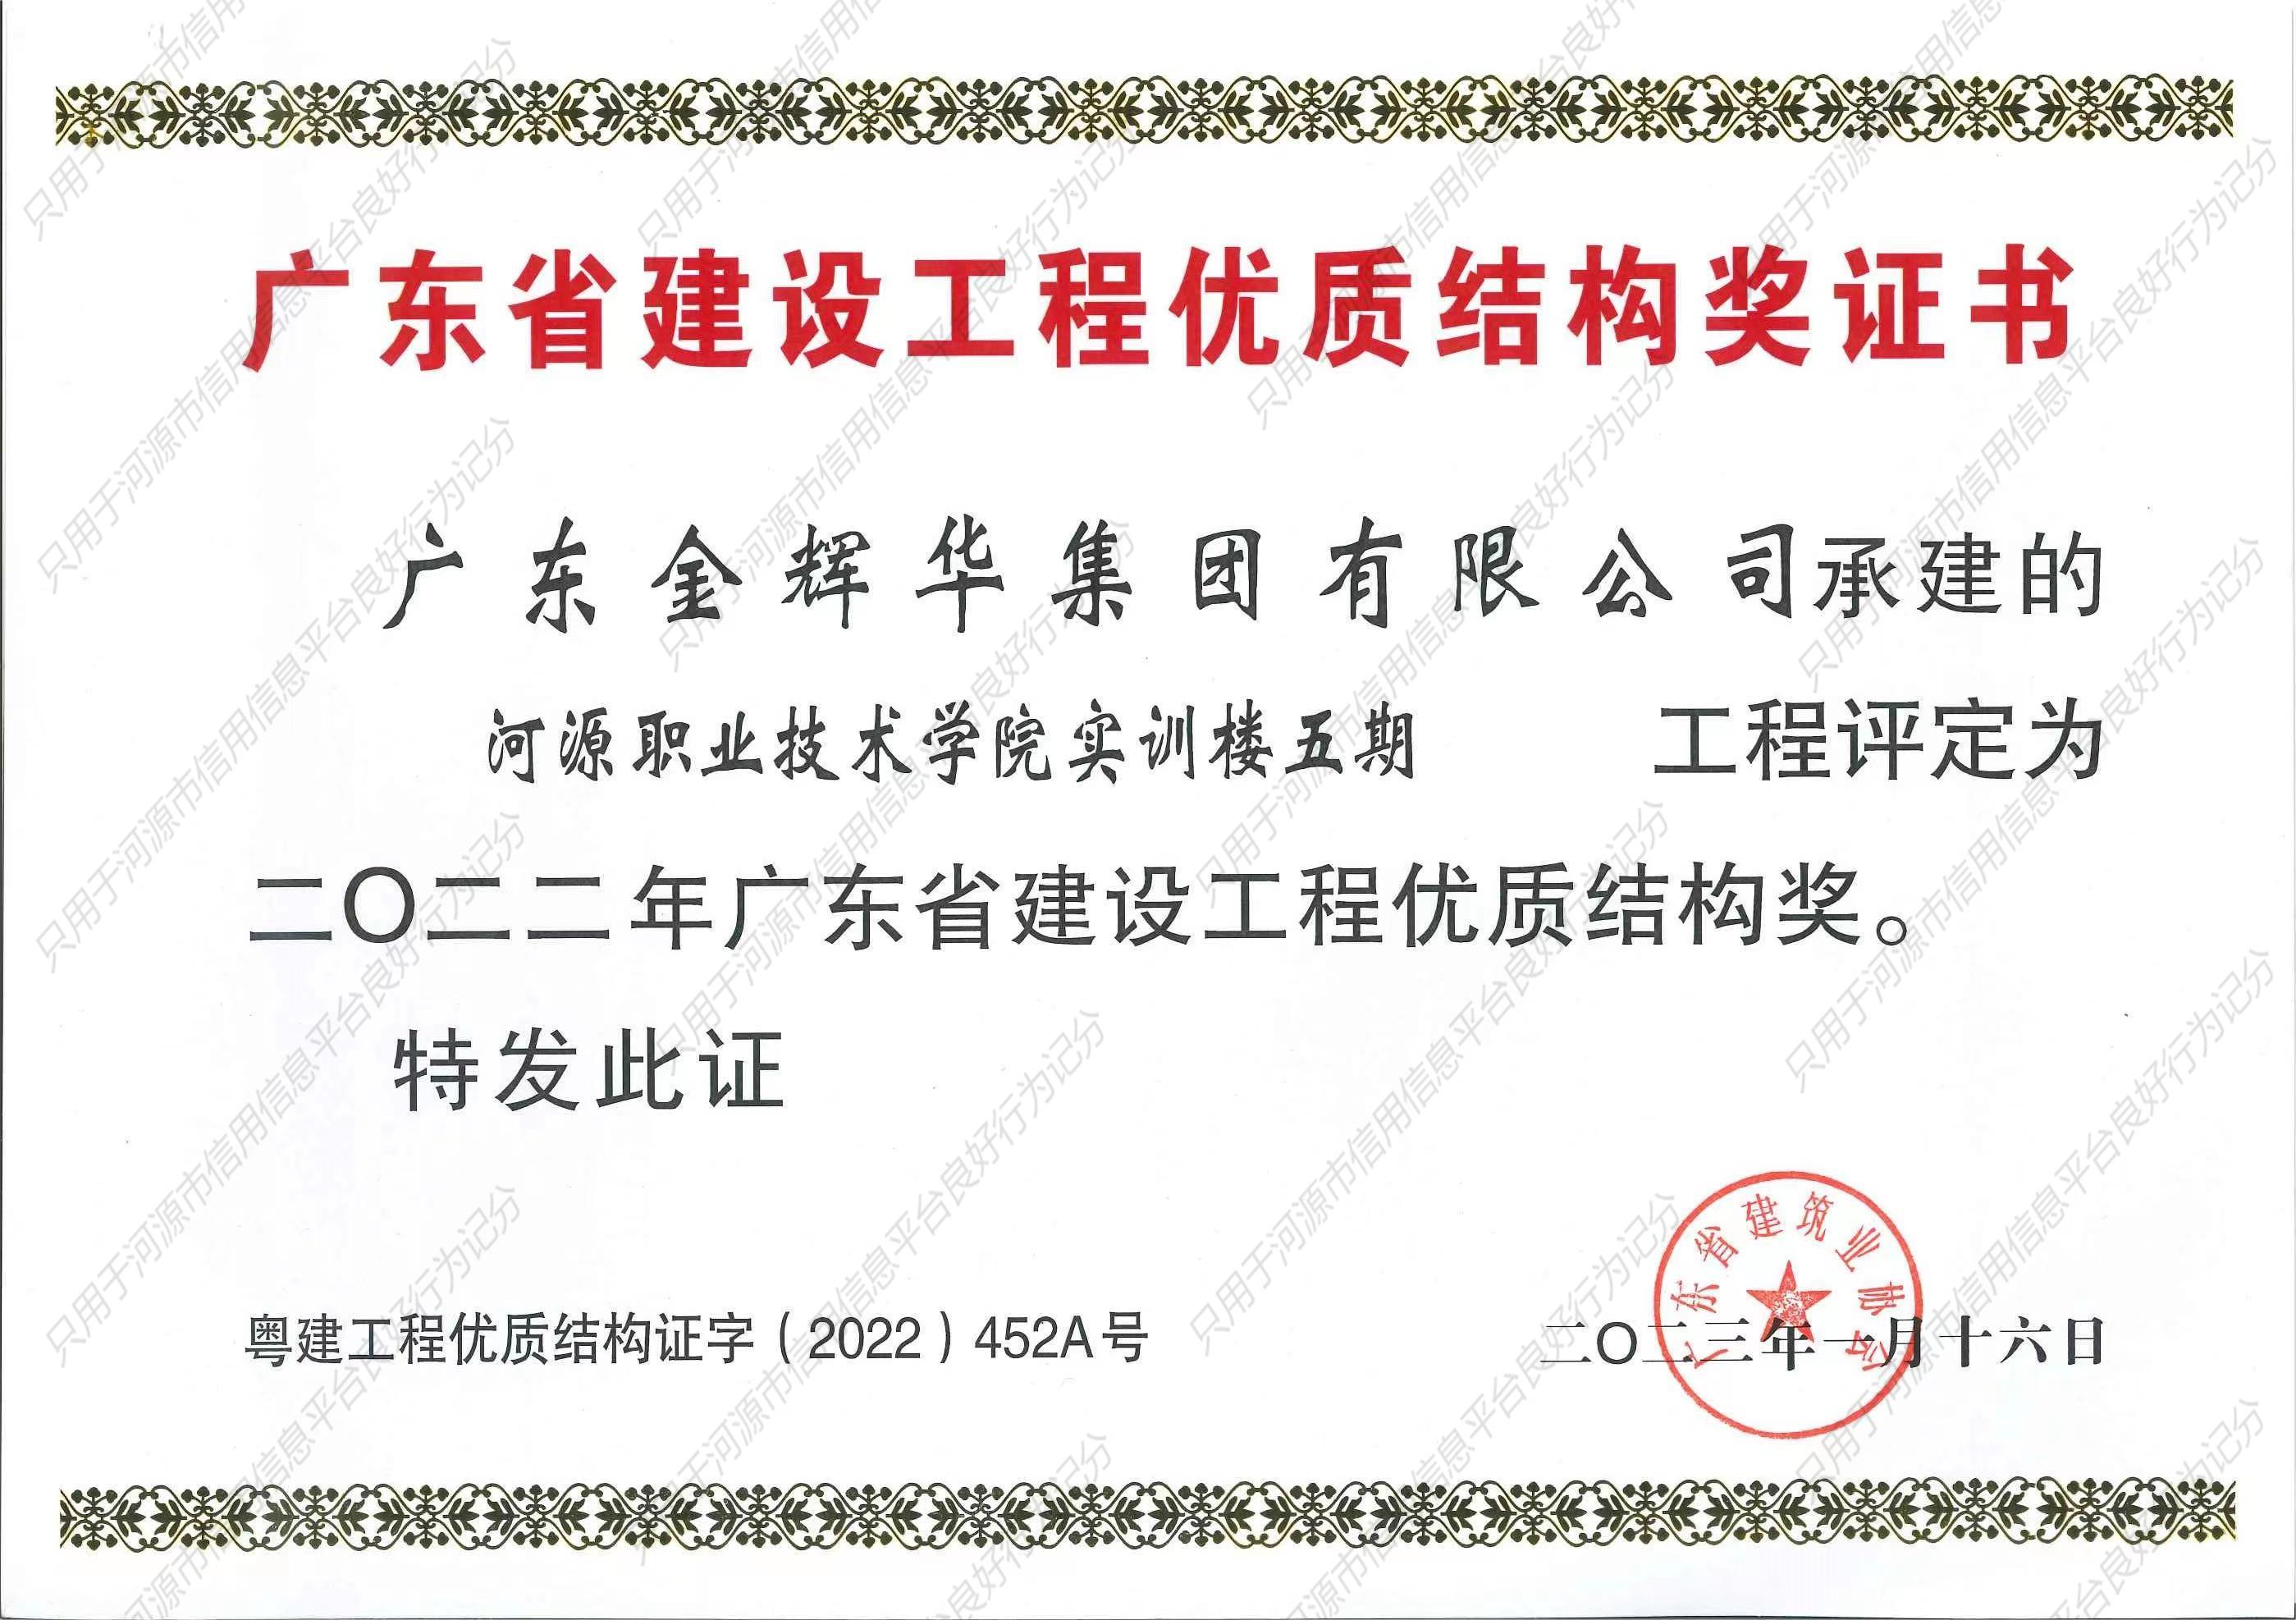 河源职业技术学院实训楼五期二0二二年广东省建设工程优质结构奖